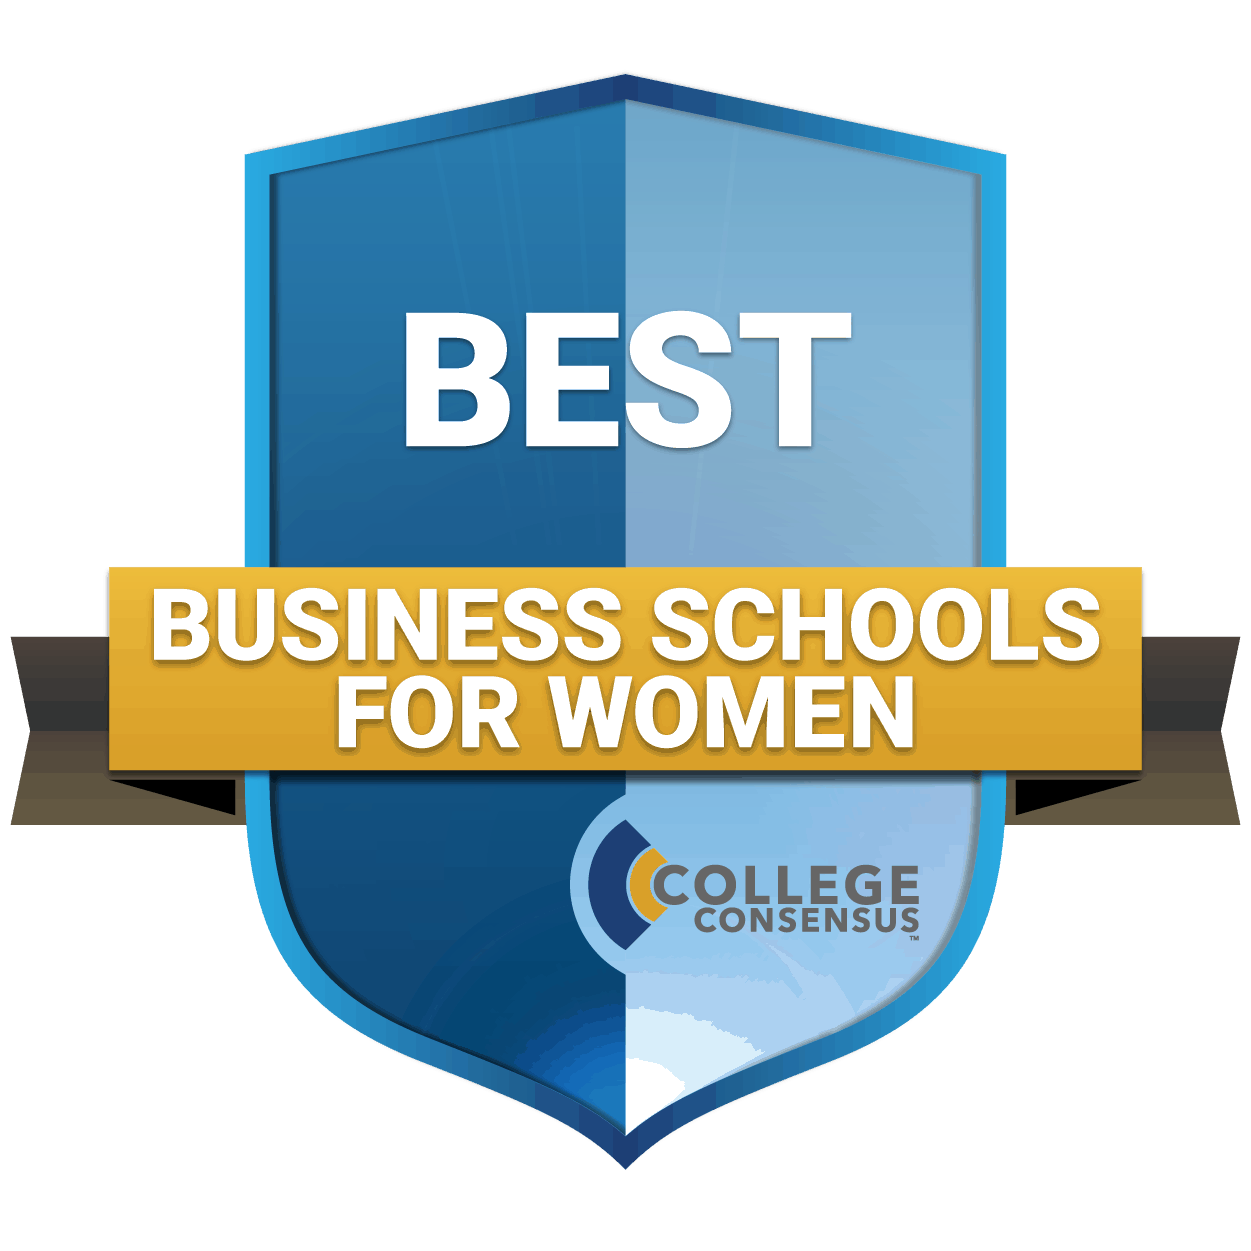 Best Business Schools for Women badge